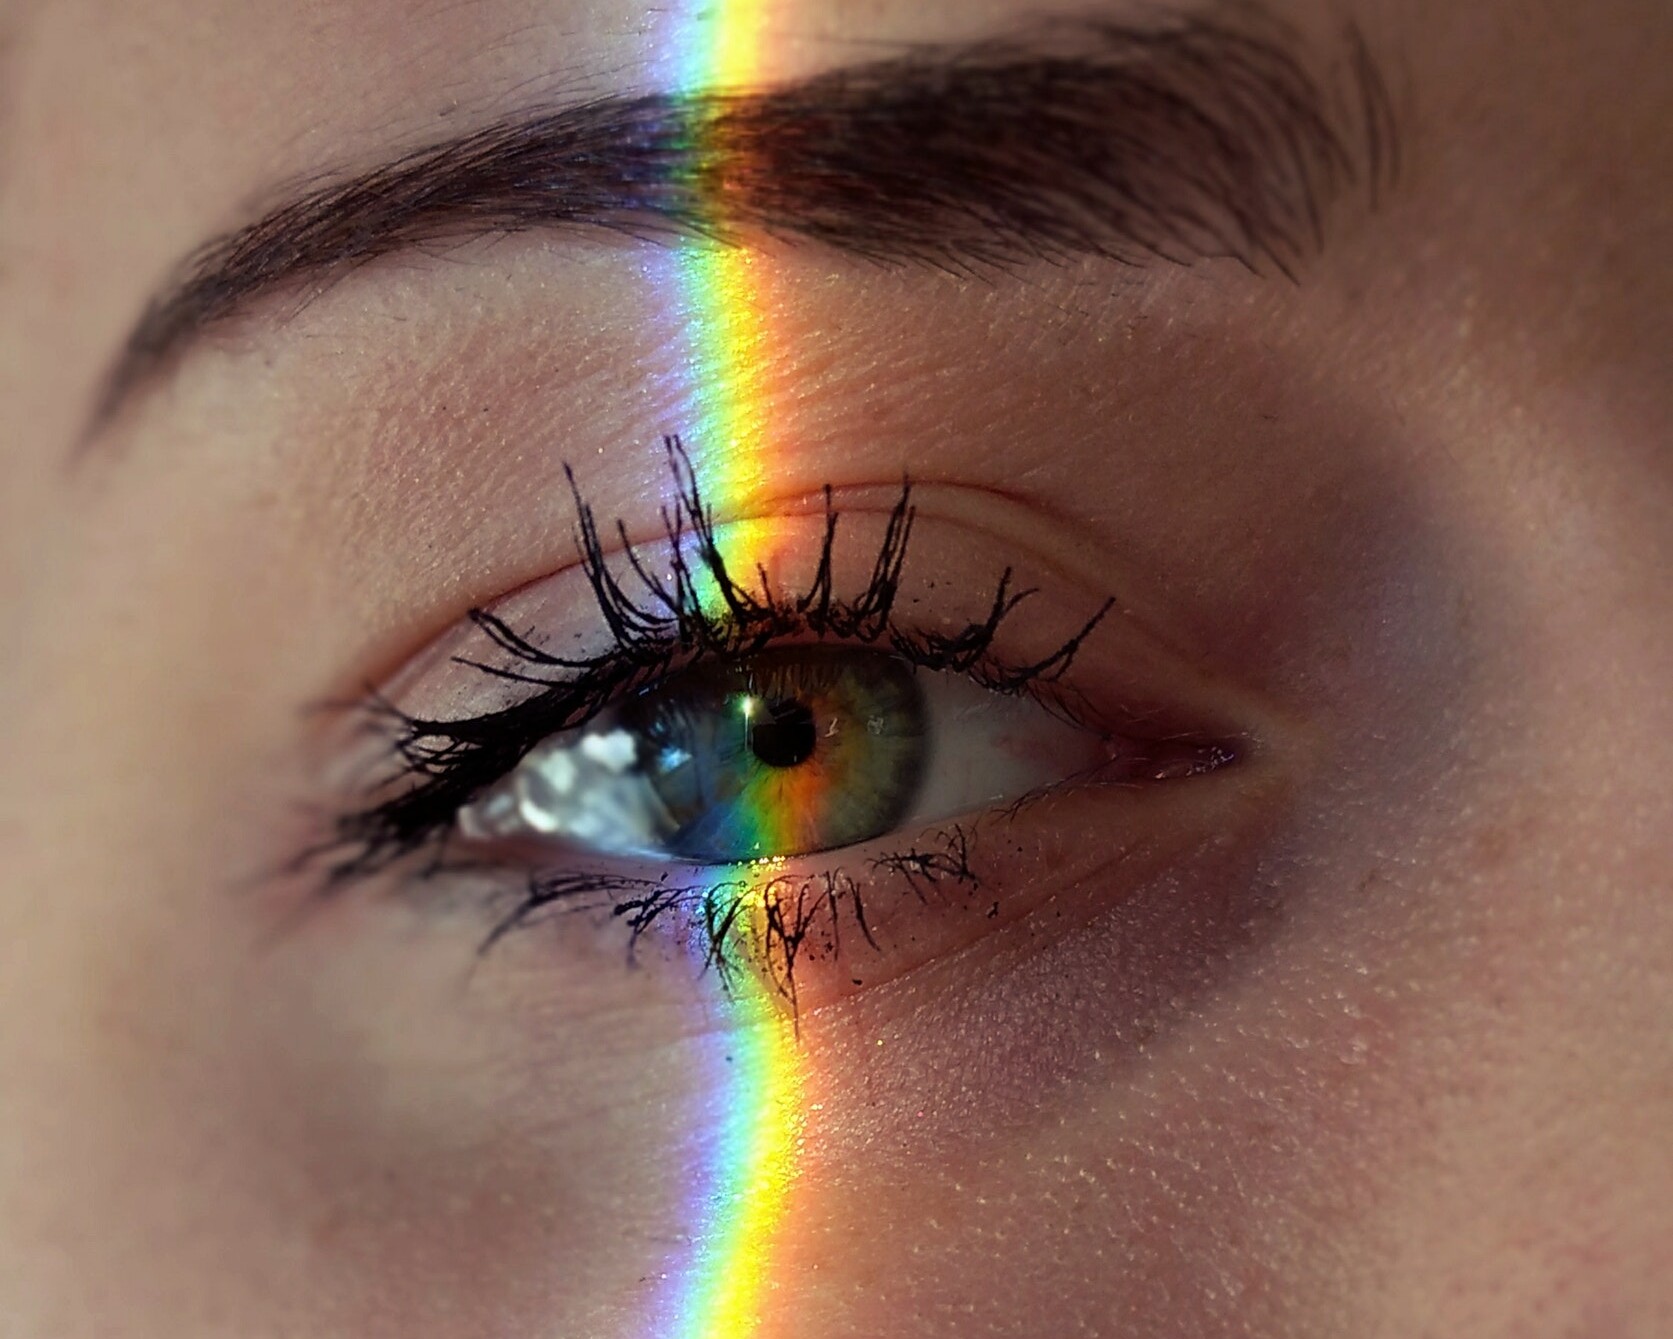 Ver para creer: El ojo humano sí que puede ver la luz infrarroja - RT